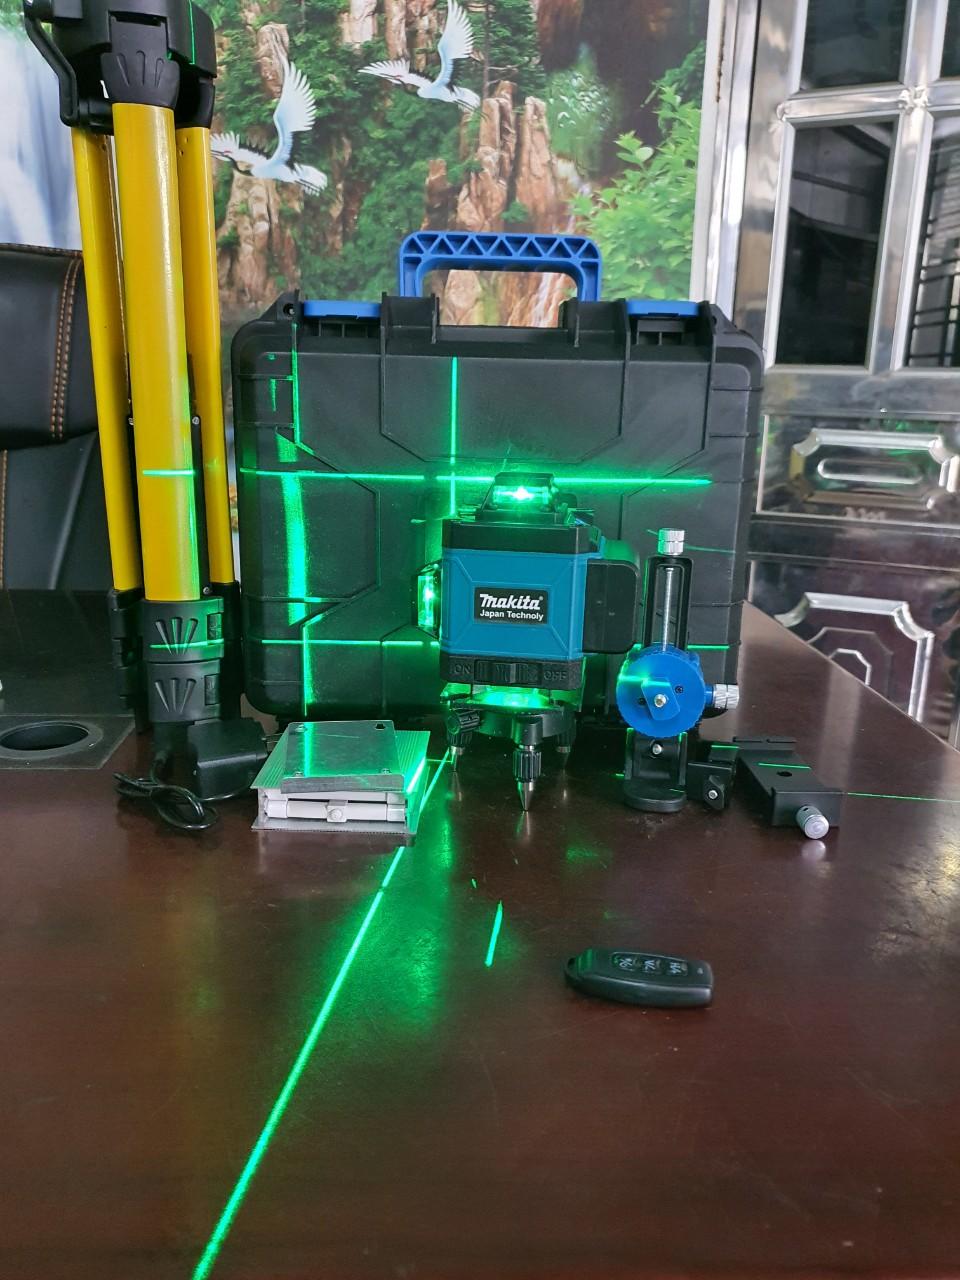 Máy laser 16 tia M.A.K.I.T.A, máy cân mực 16 tia, tặng pin dự phòng, bh 12 tháng